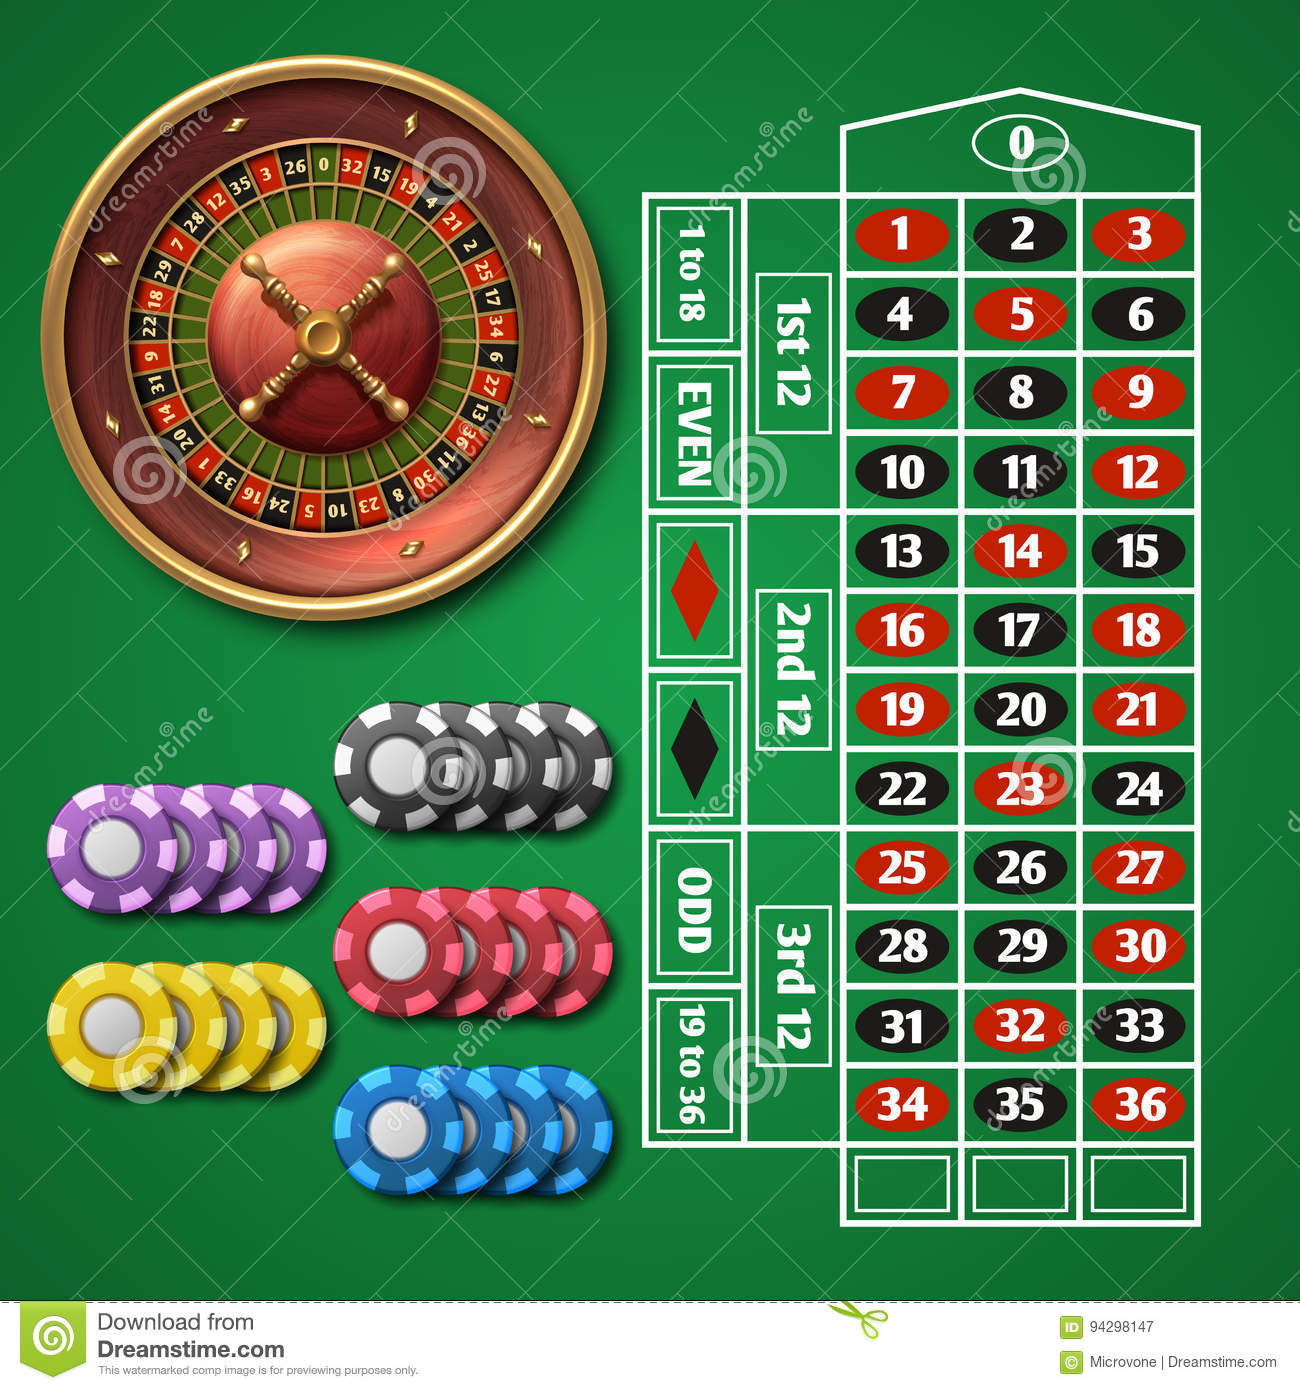 Скачать бесплатно новые азартные игры на телефон размером 240 320